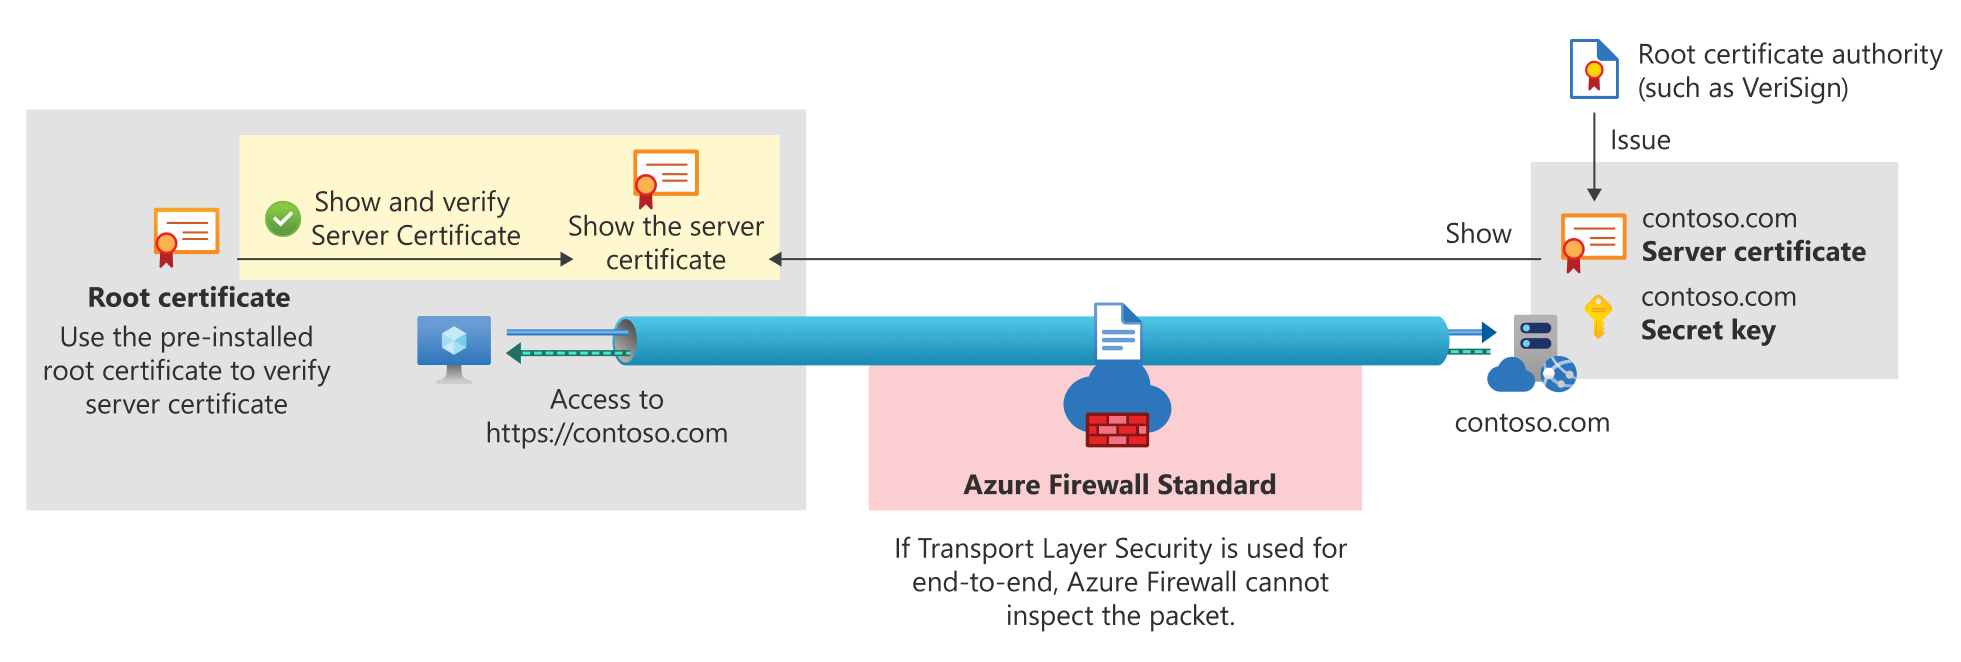 Végpontok közötti TLS az Azure Firewall Standardhoz